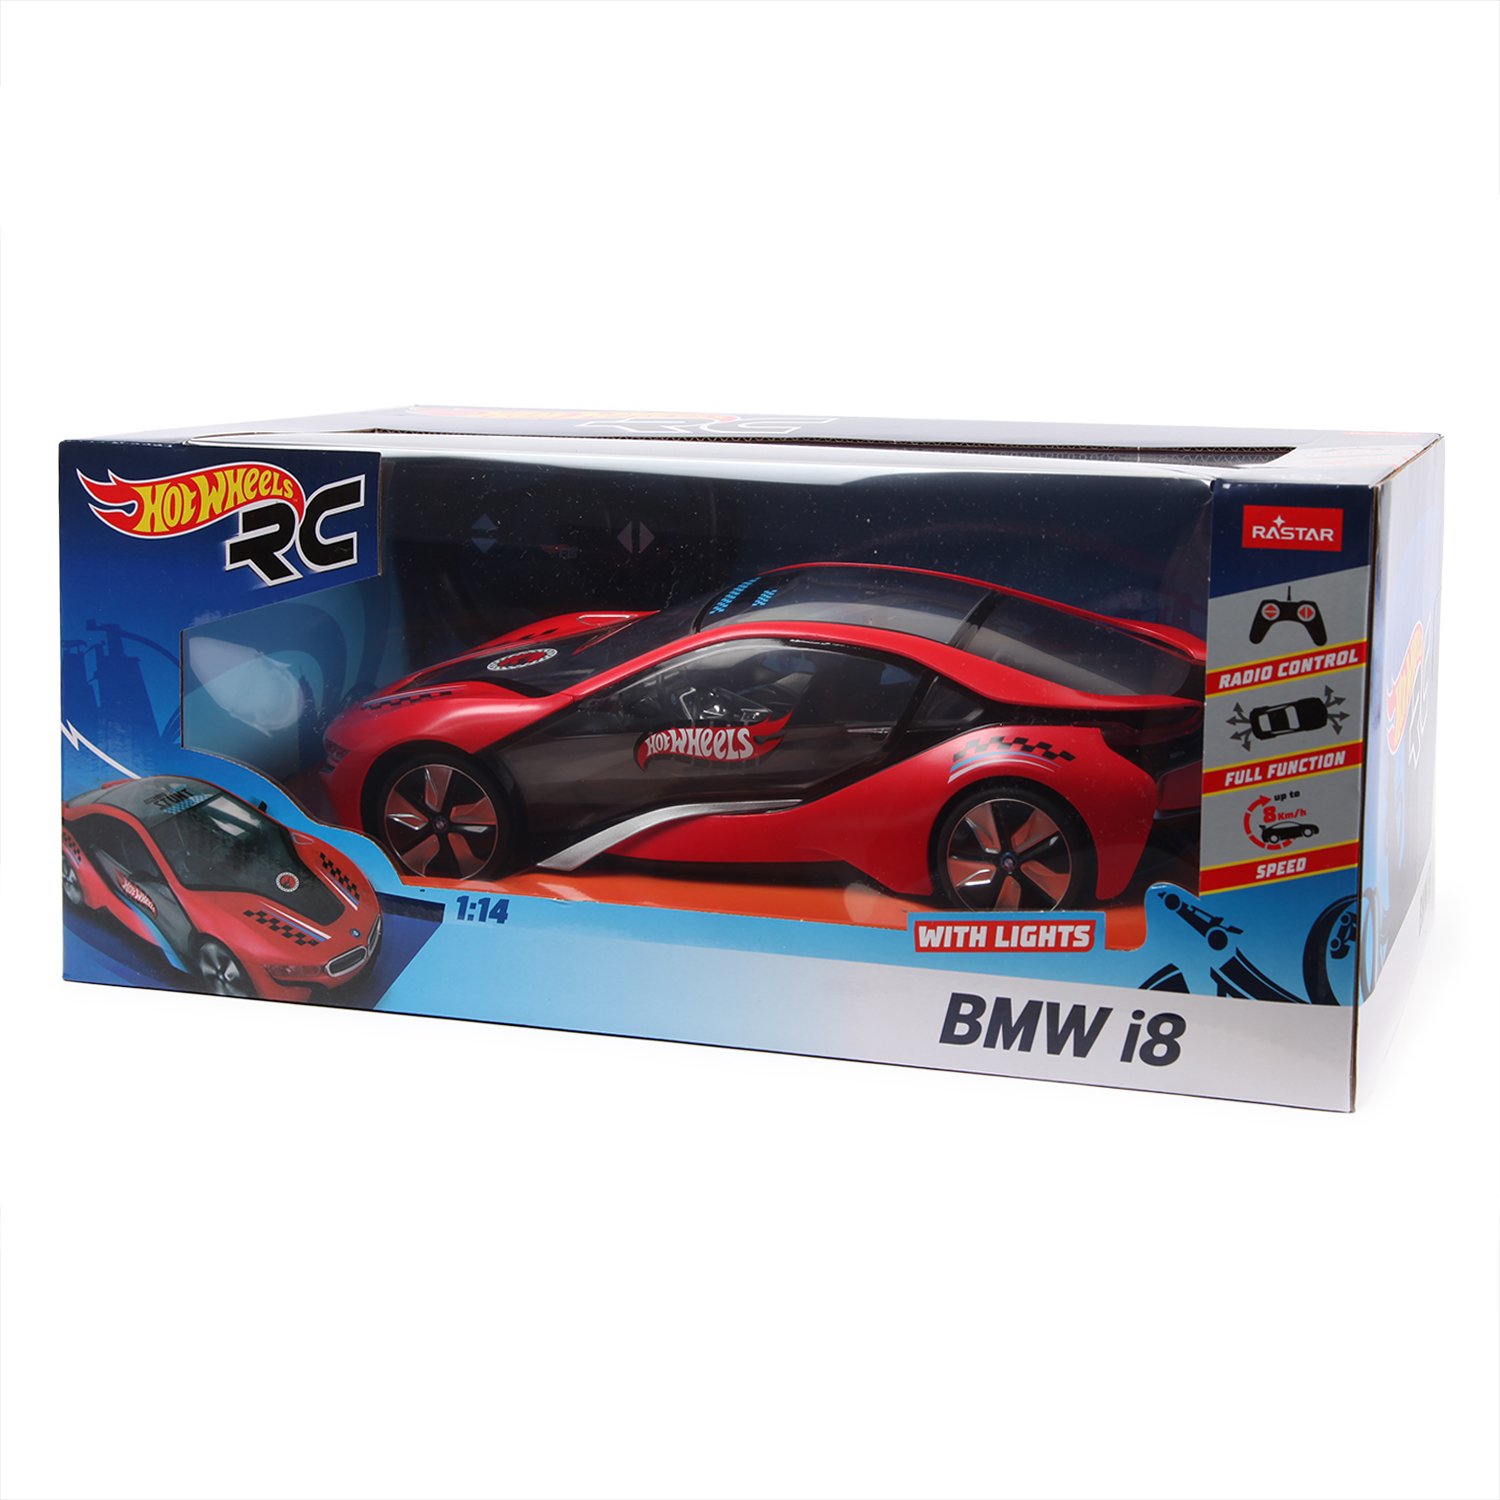 Машина Hot Wheels РУ 1:14 BMW I8 49600-11А